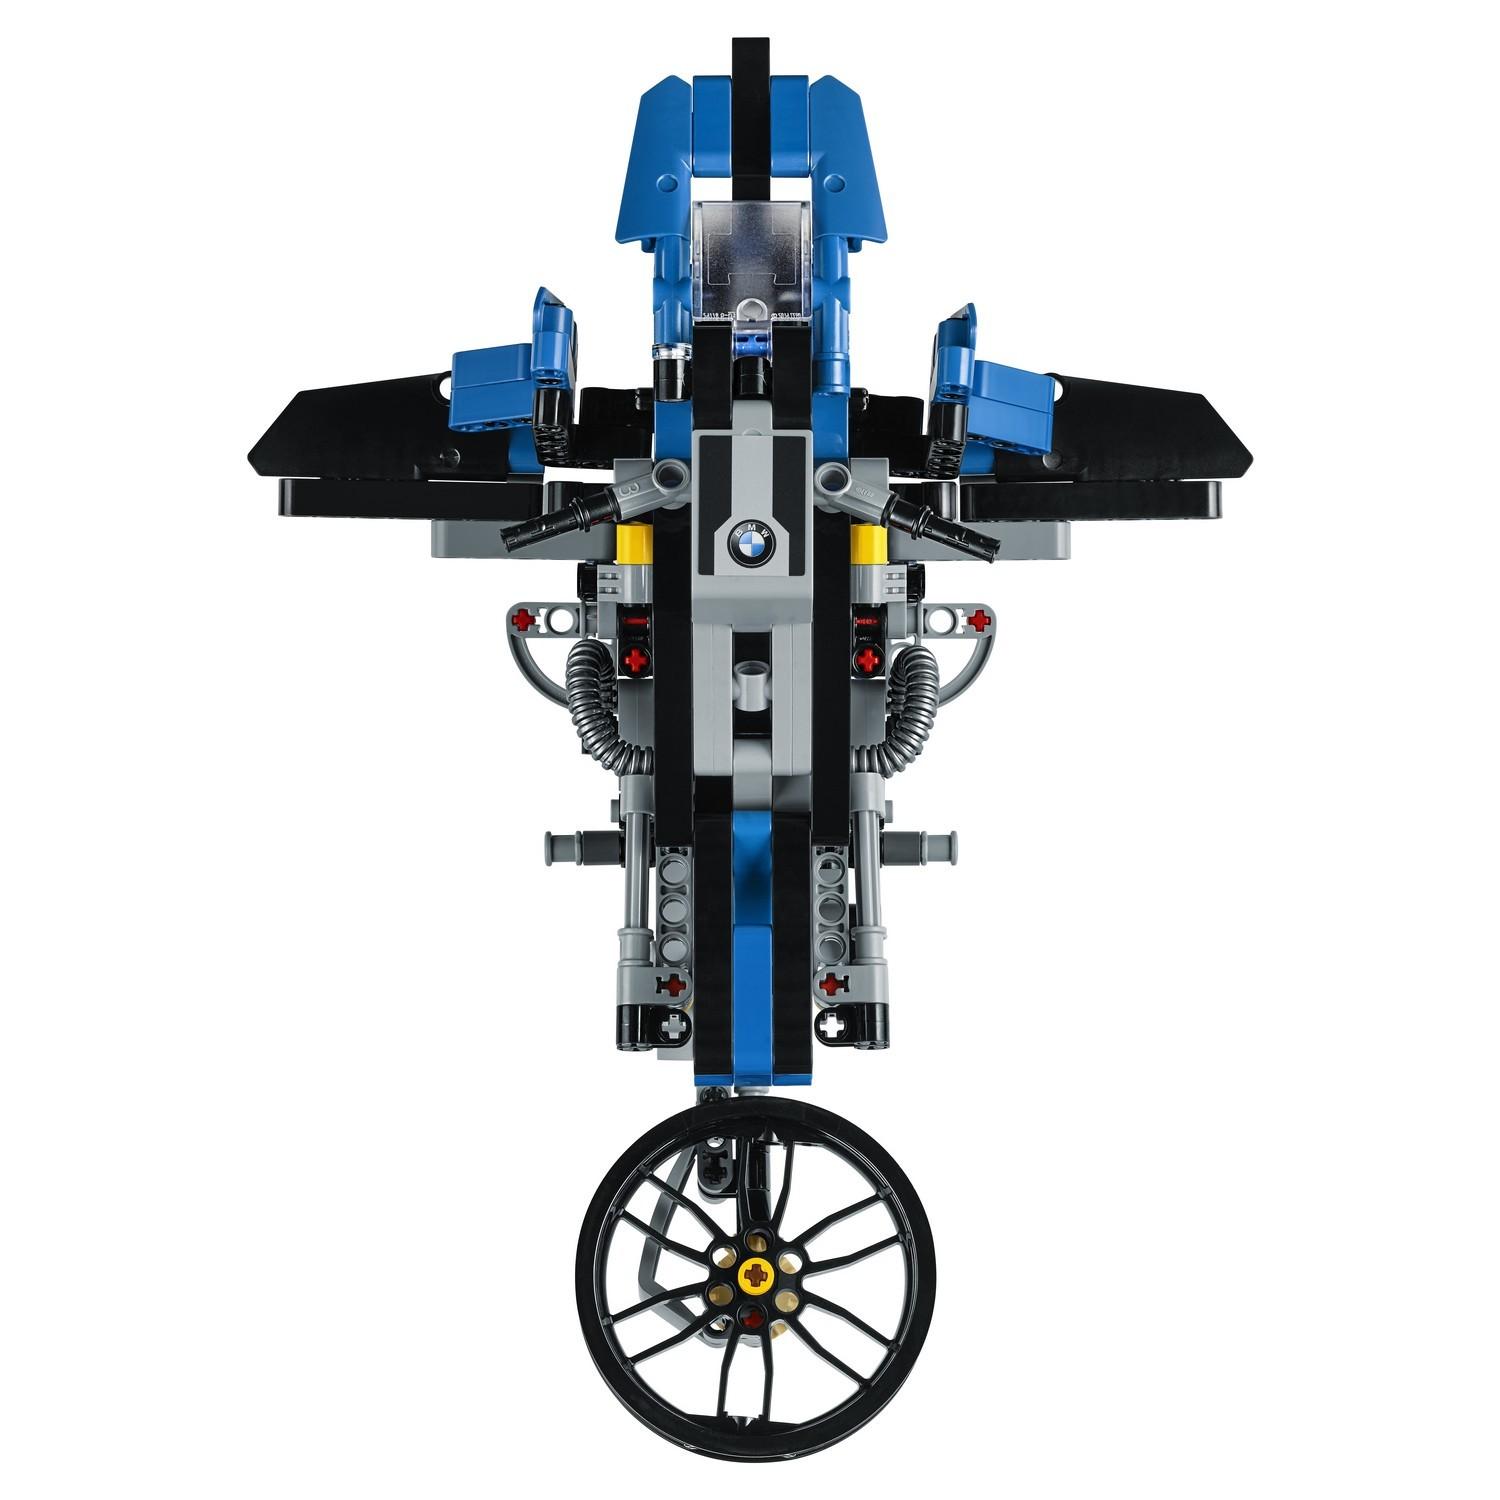 Lego Technic 42063 Приключения на BMW R1200 GS